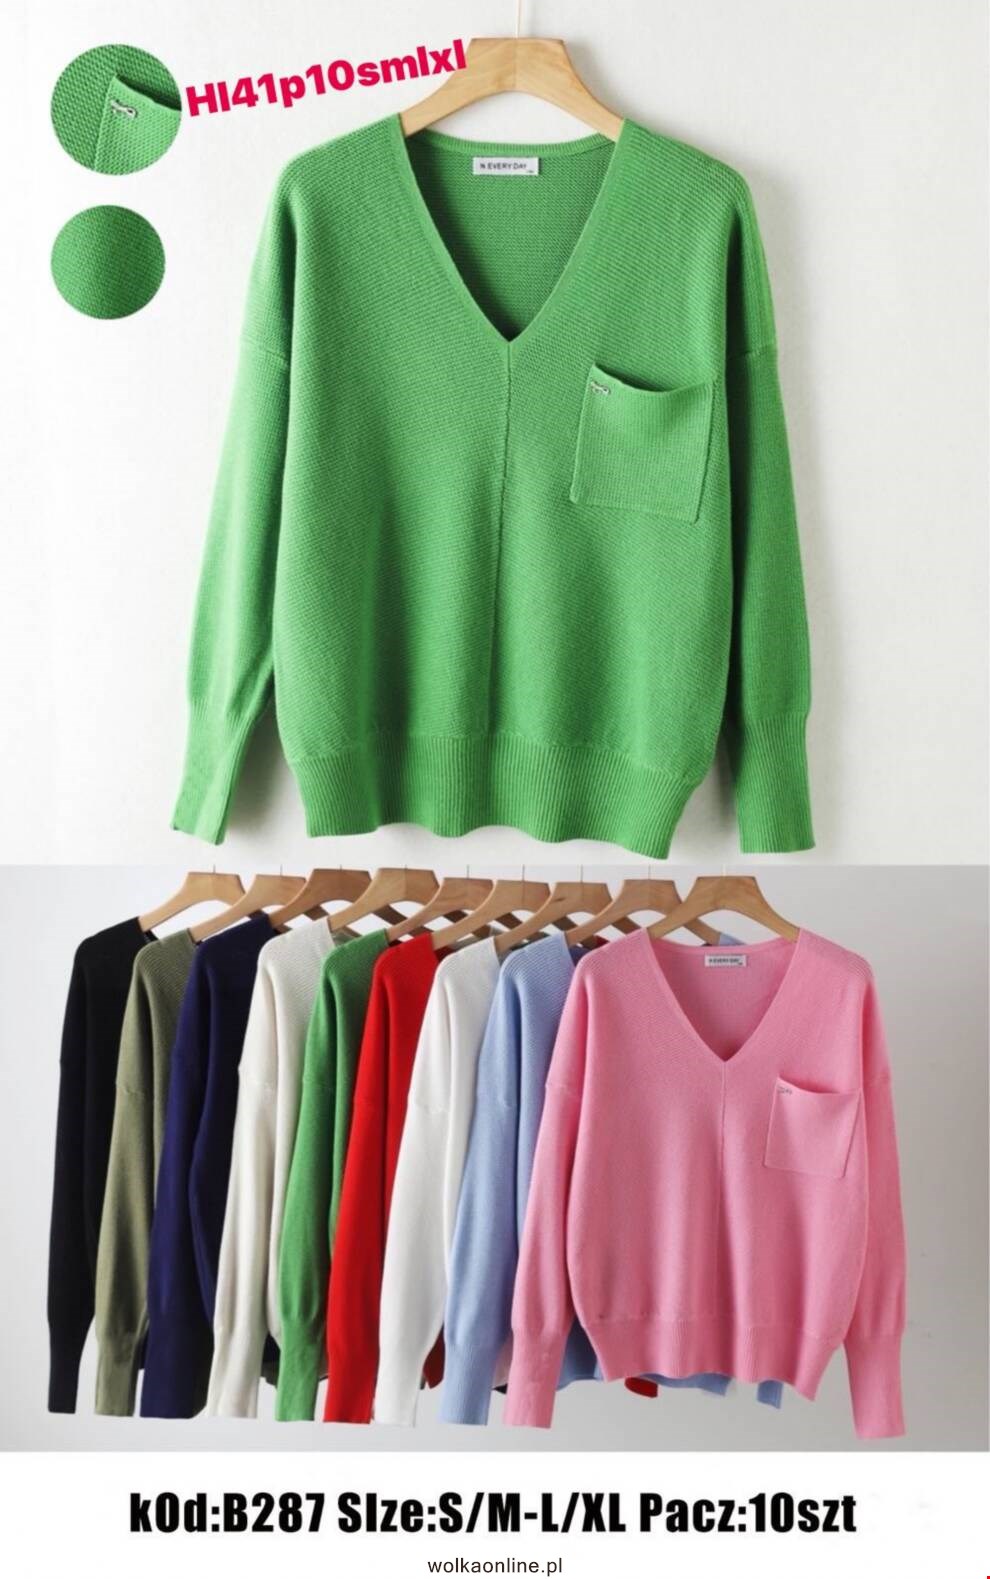 Sweter damskie B287 Mix kolor S/M-L/XL